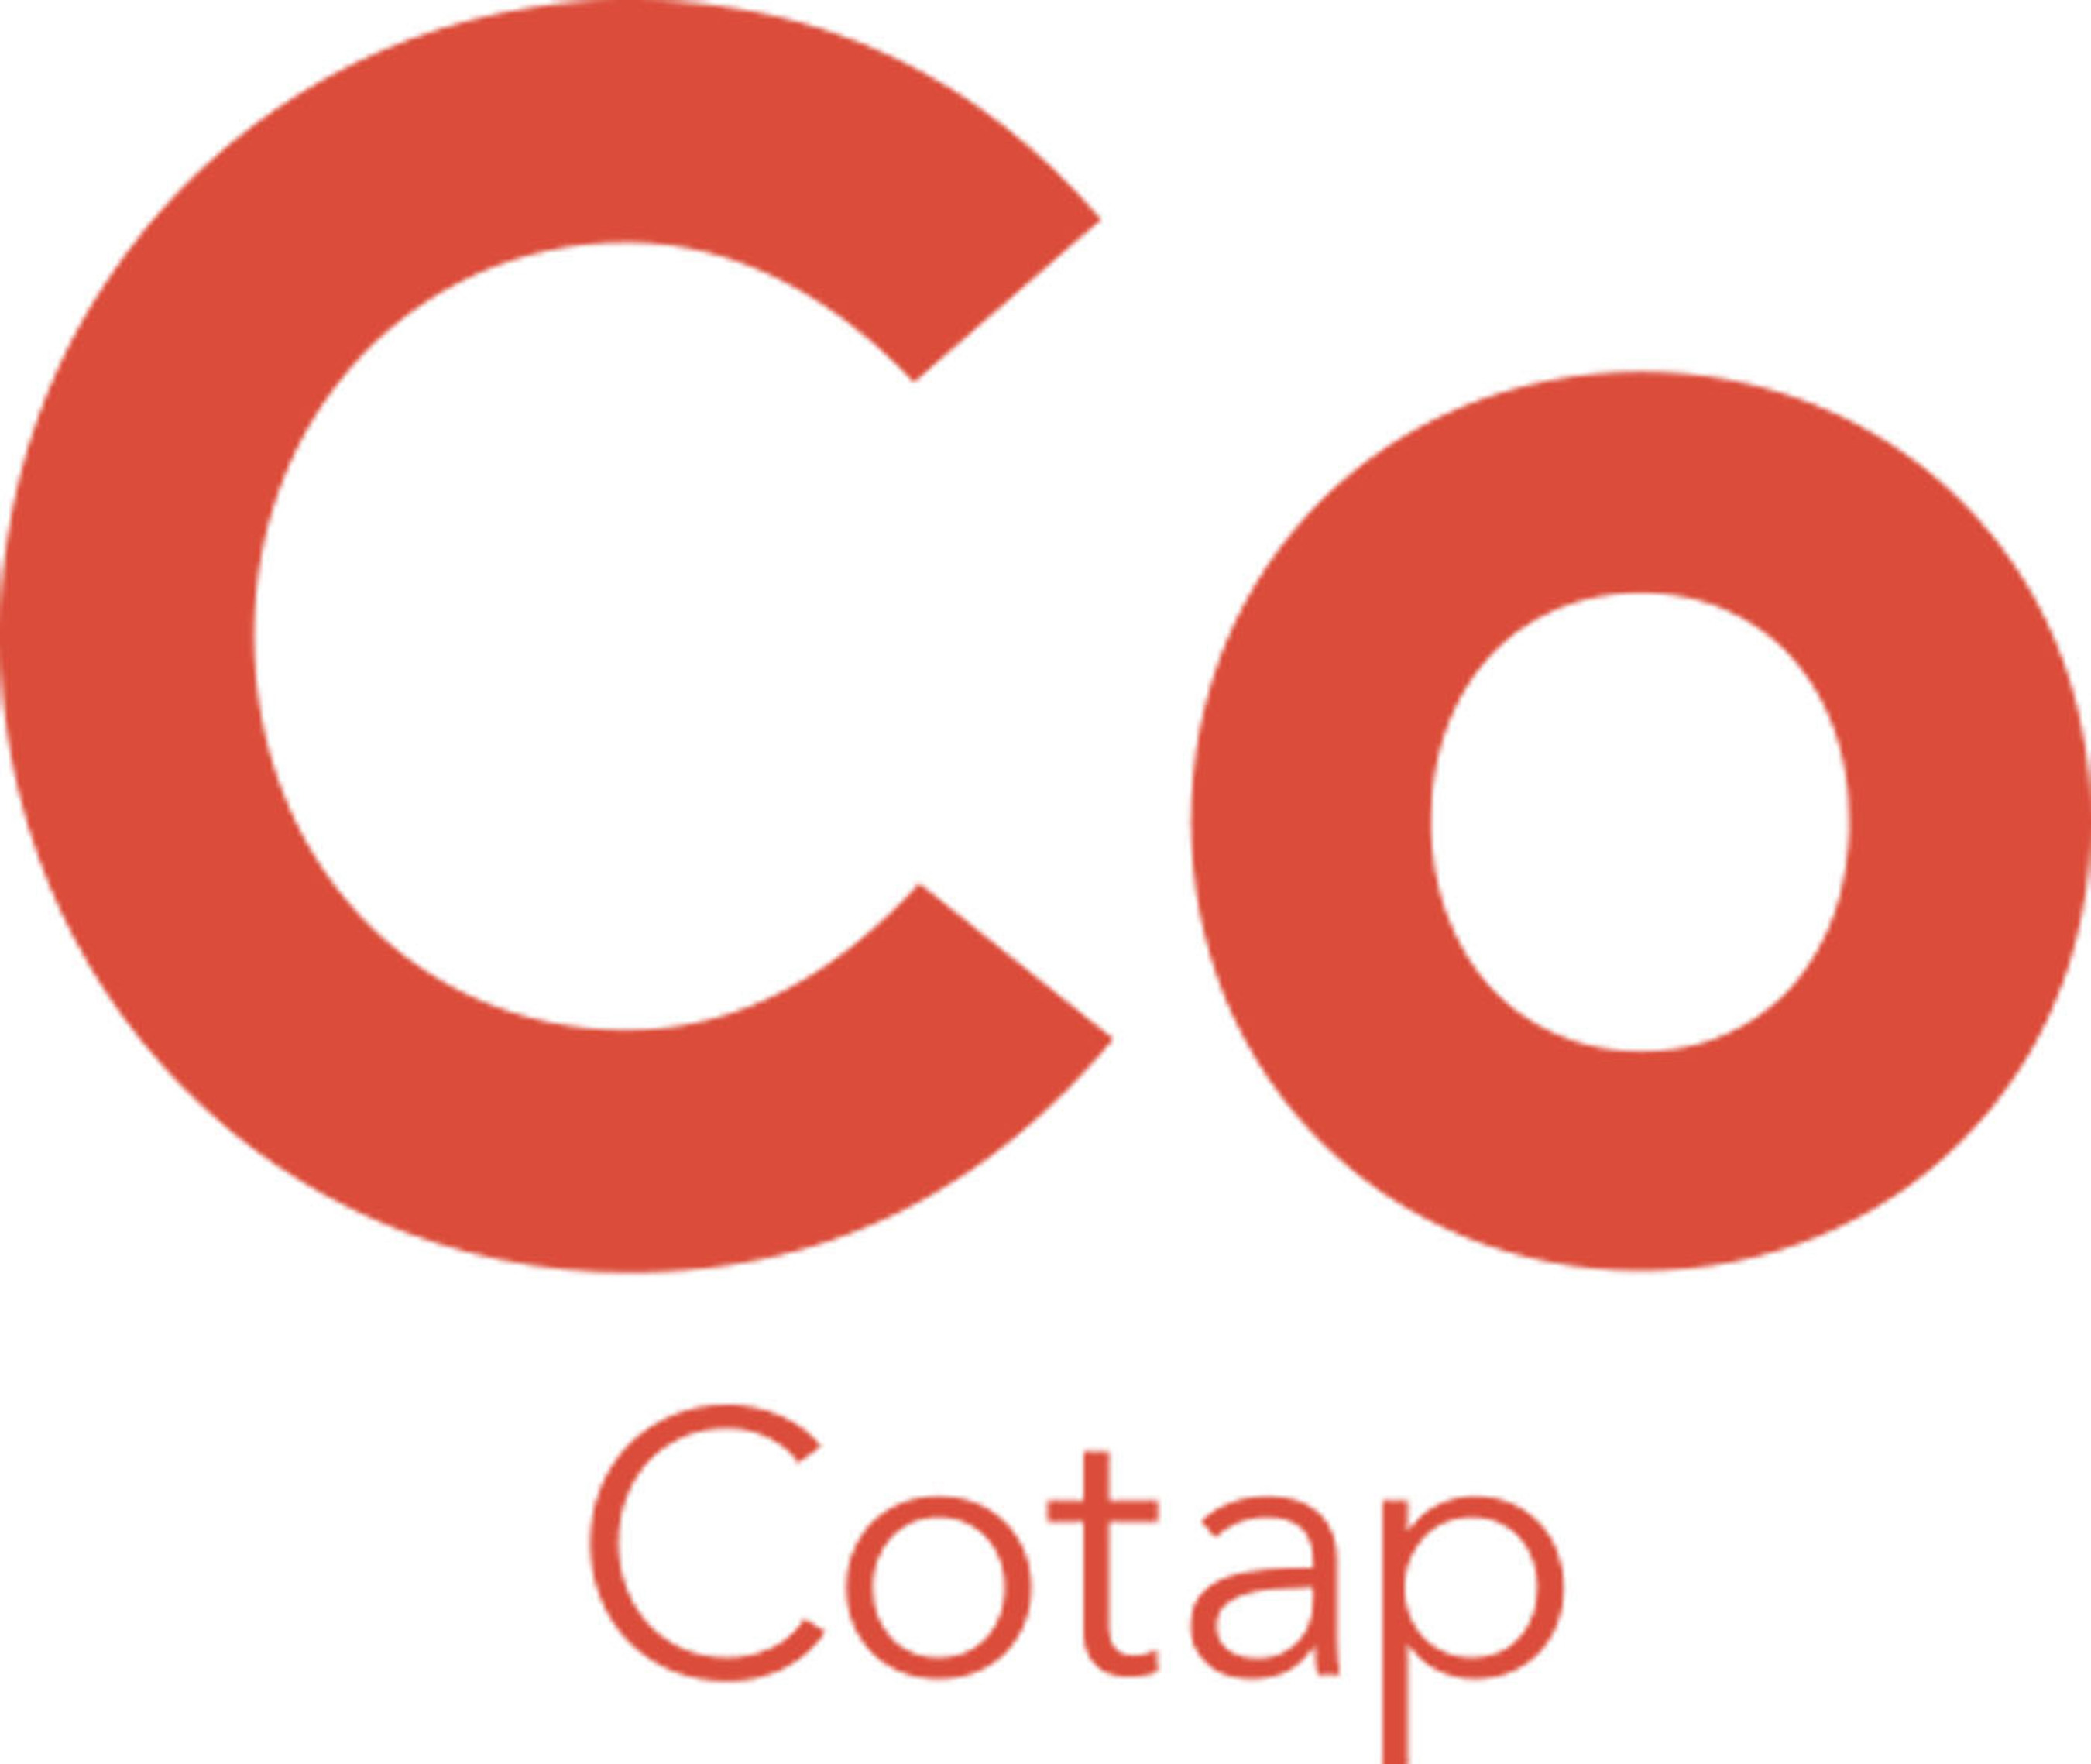 CoTap logo. (PRNewsFoto/CoTap) (PRNewsFoto/)